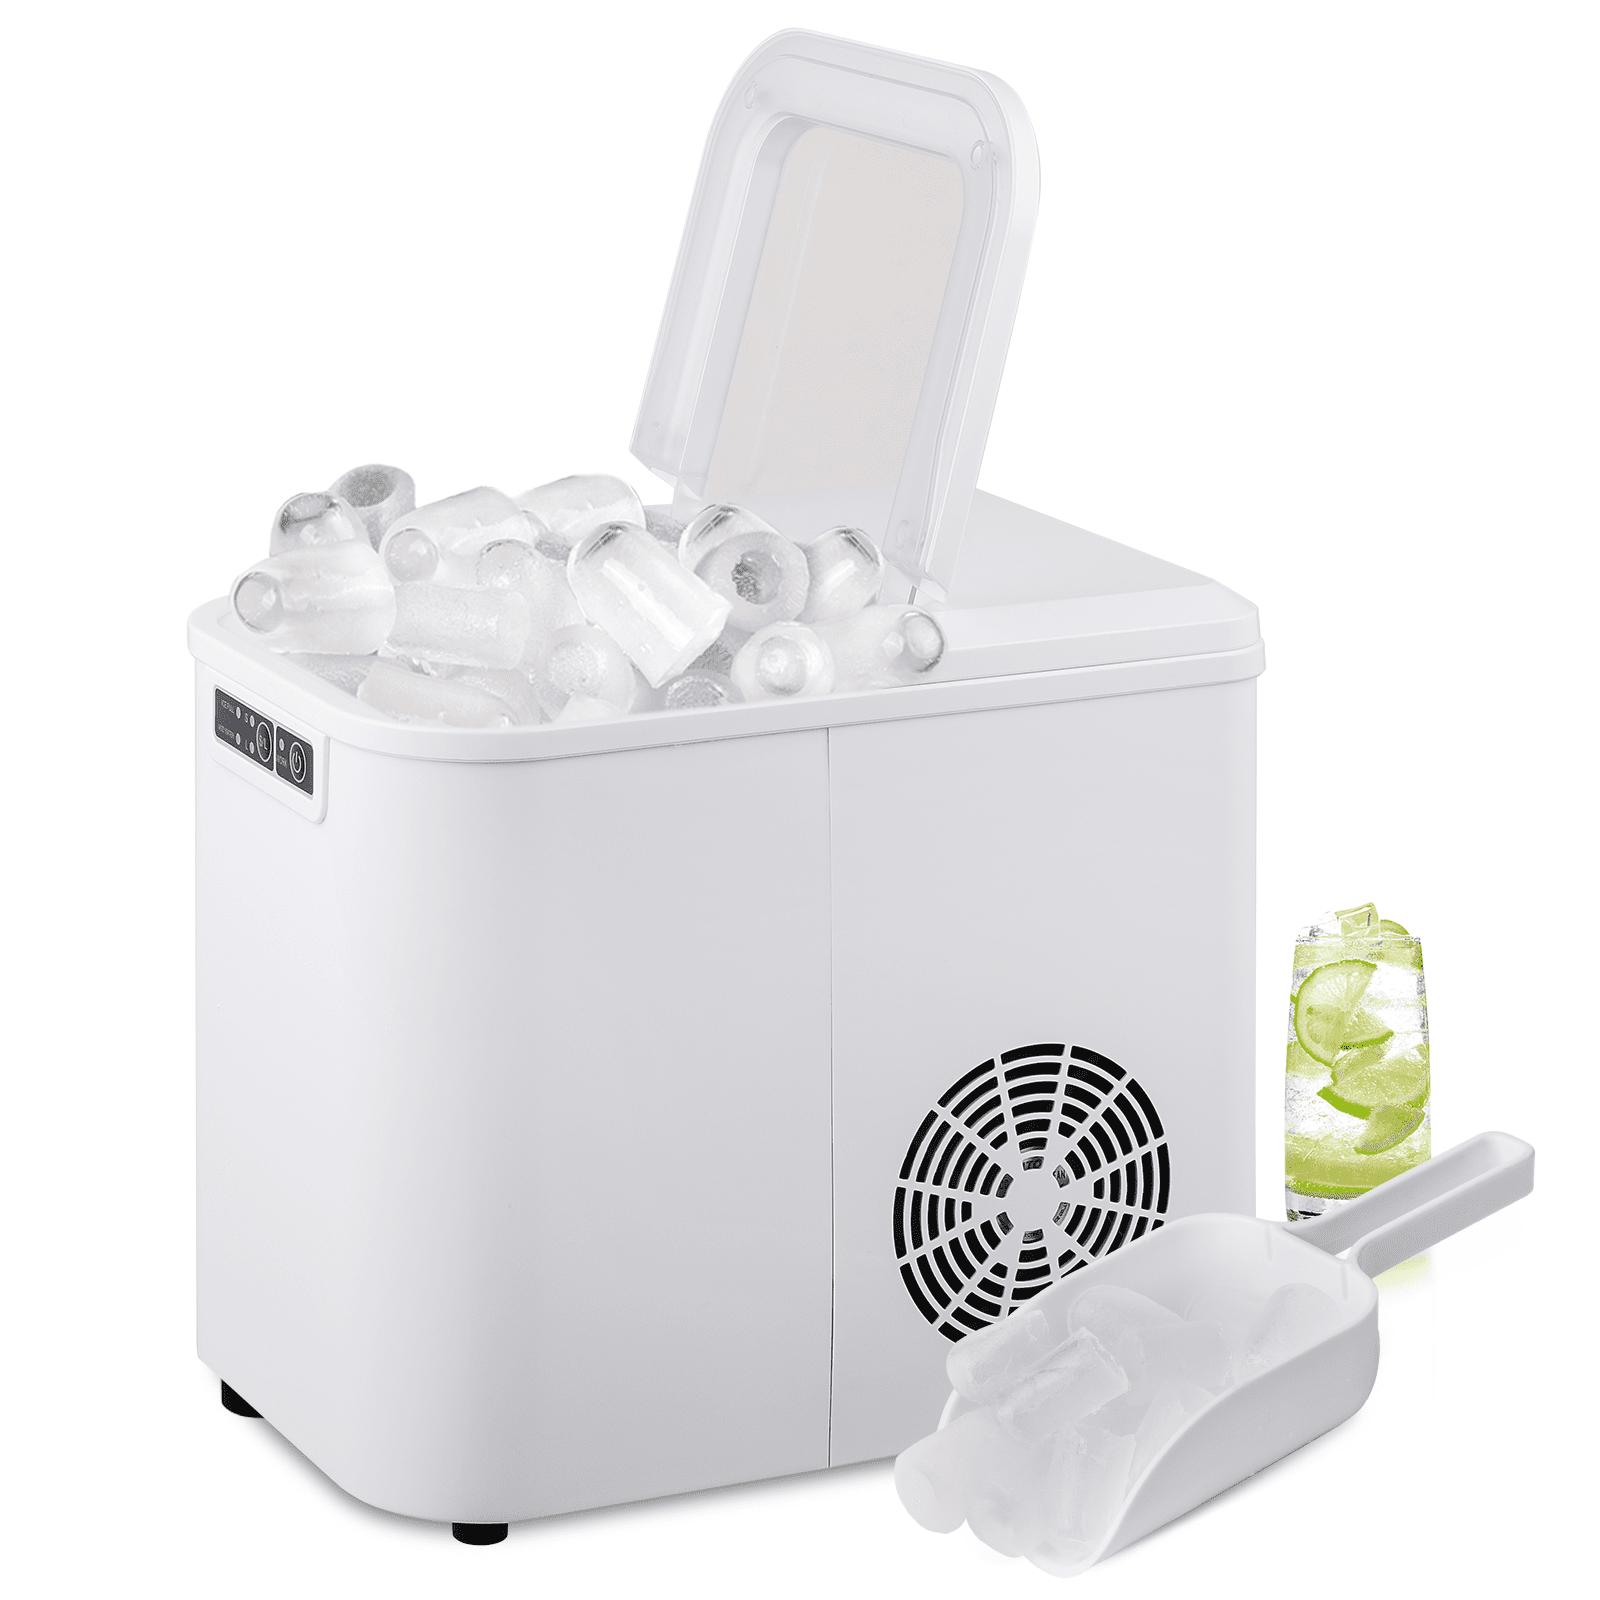 Follett 1149954 SafeCLEAN Plus Liquid Ice Machine Cleaner